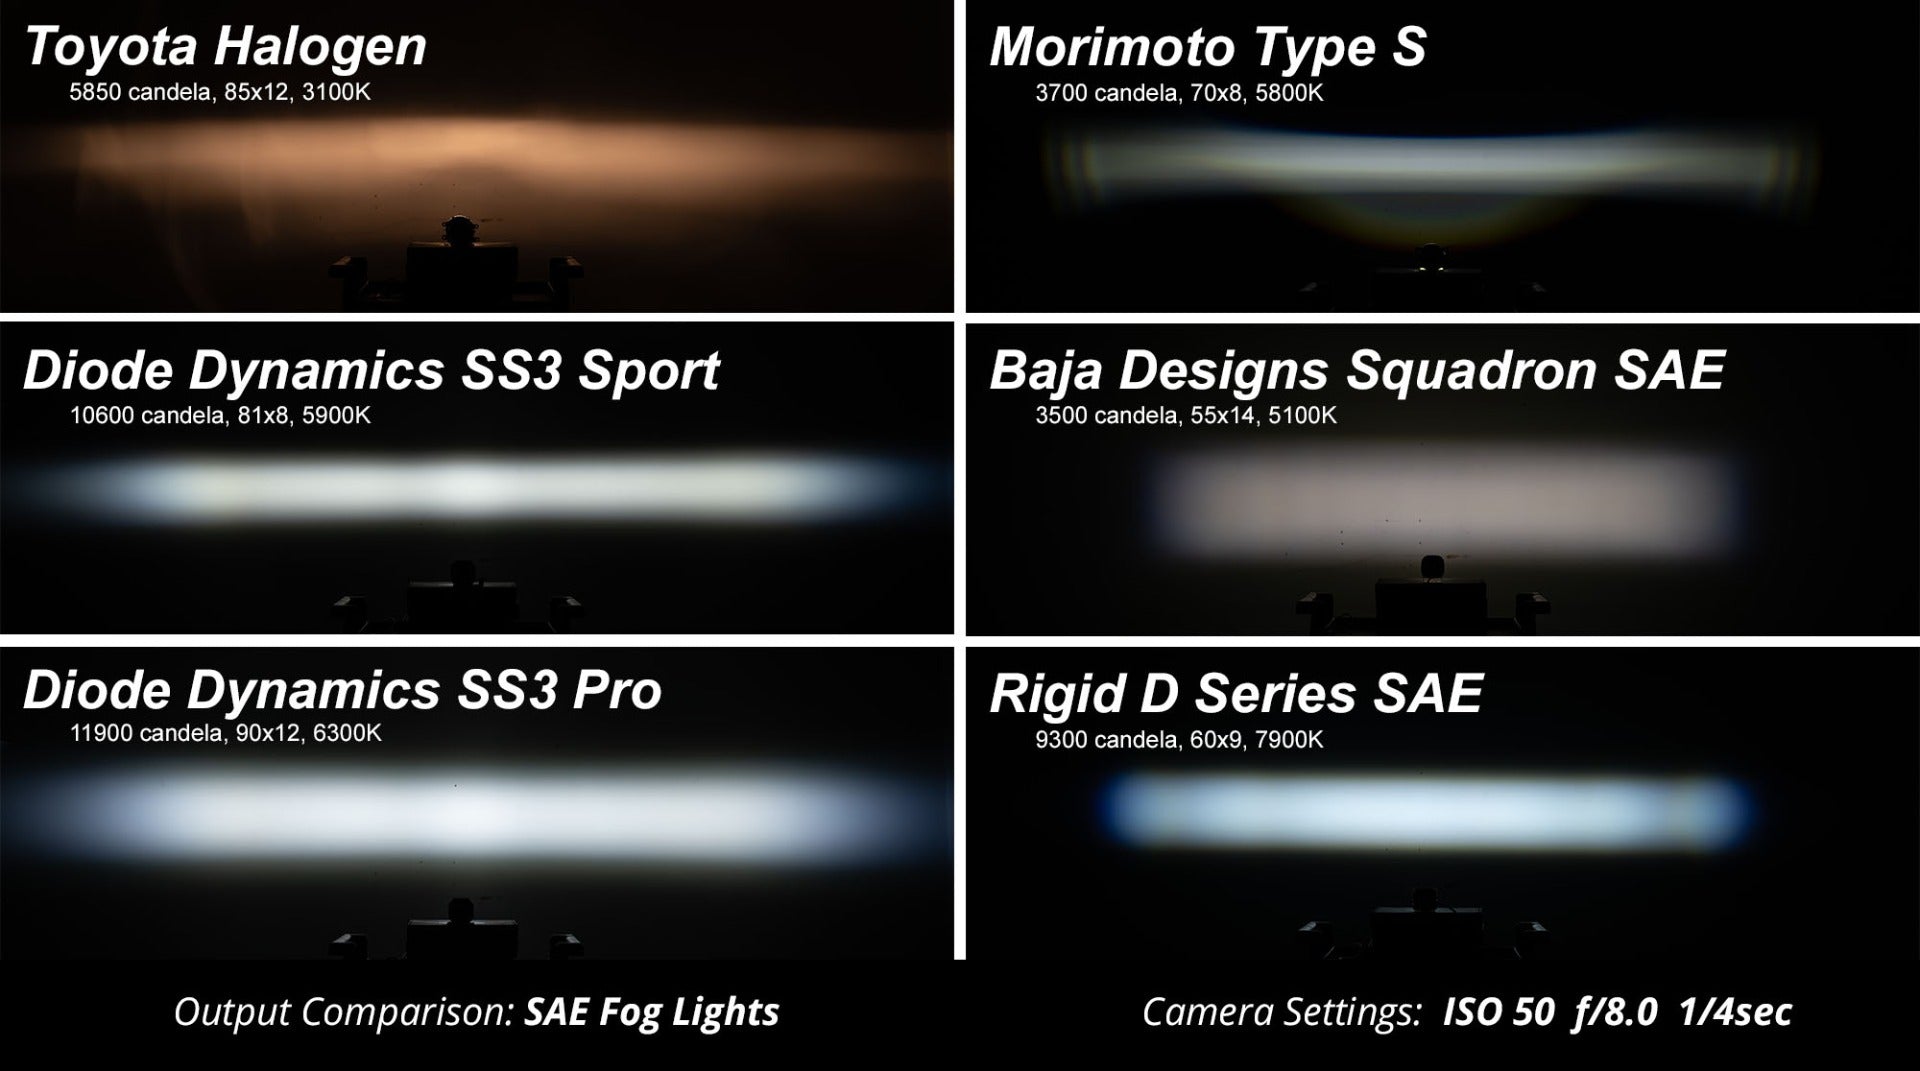 SS3 LED Fog Light Kit for 2017-2019 Nissan Titan White SAE Fog Sport w/ Backlight Diode Dynamics